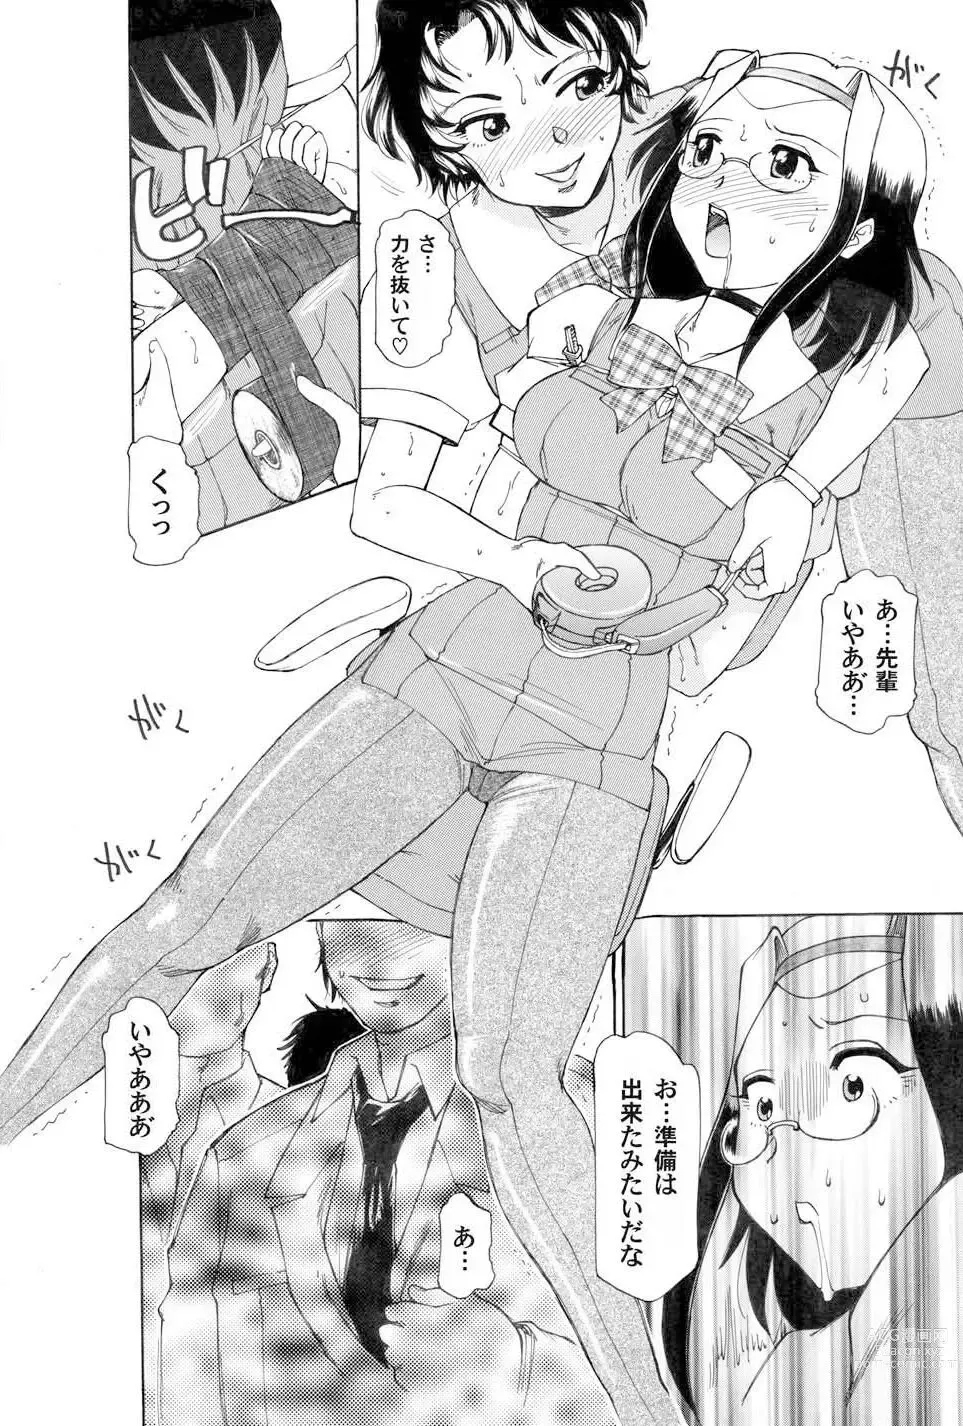 Page 8 of manga Kochira Soumubu Niku Houshika